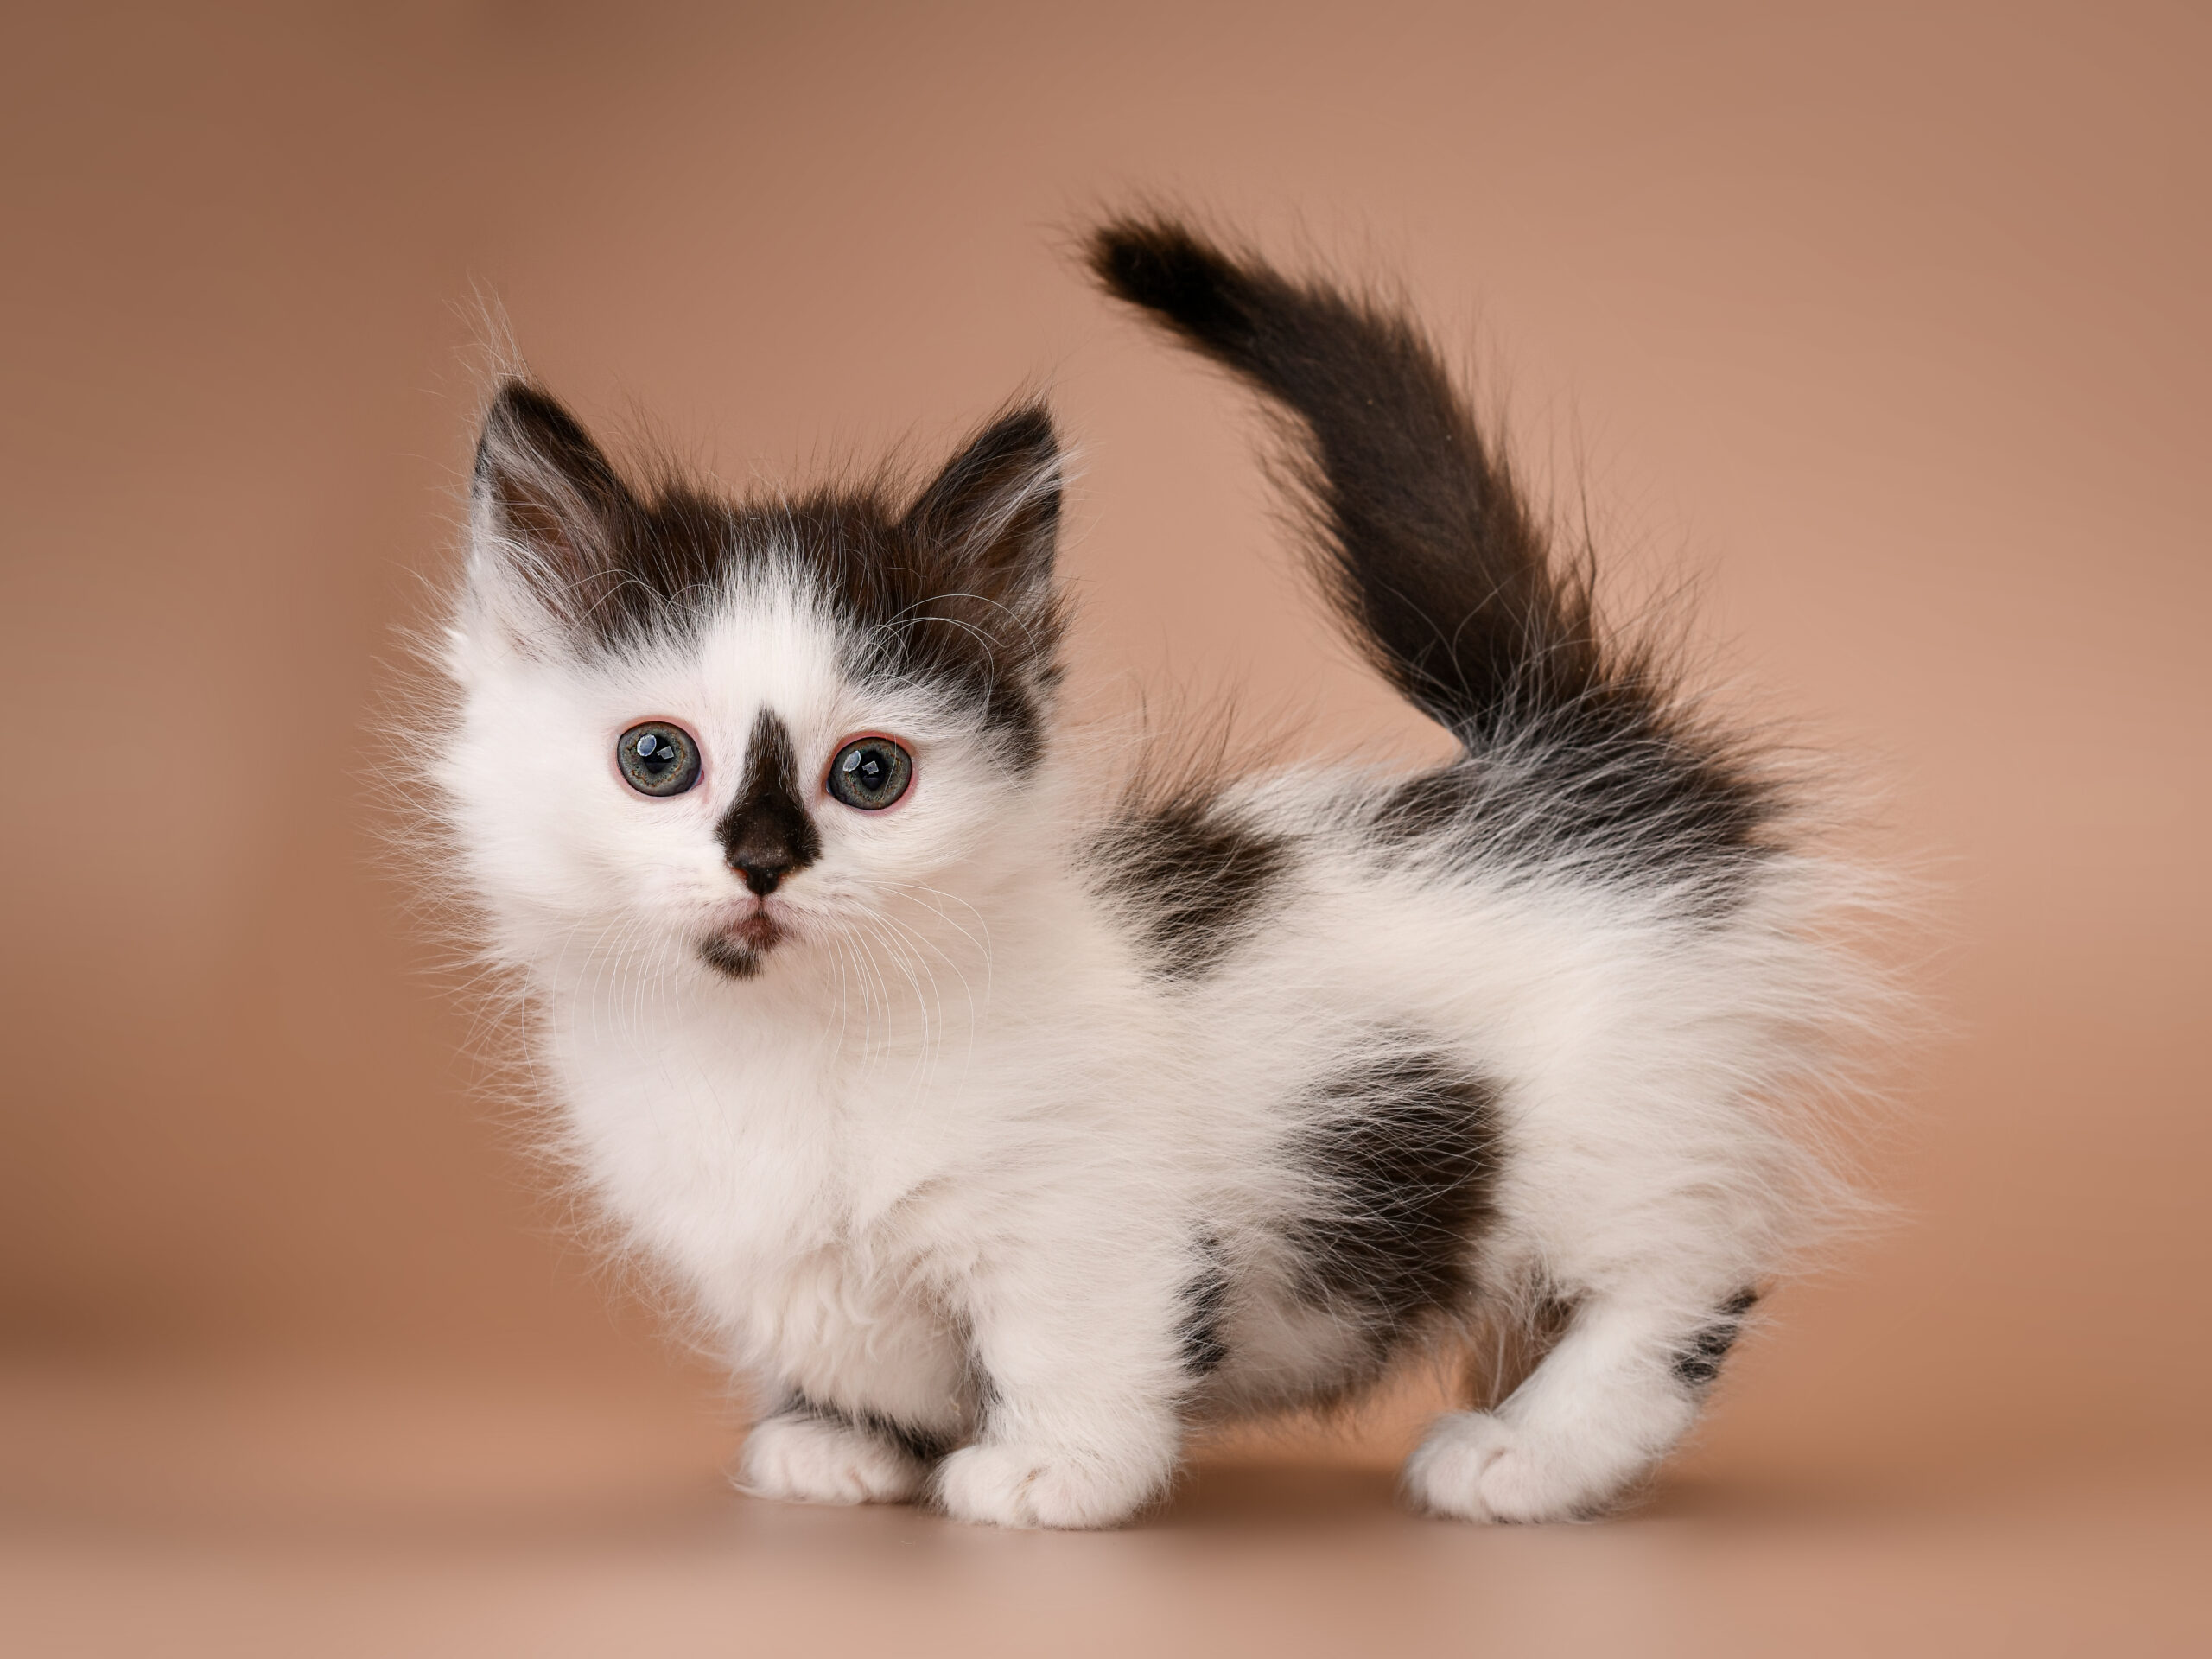 Very small, tiny, cute kitten